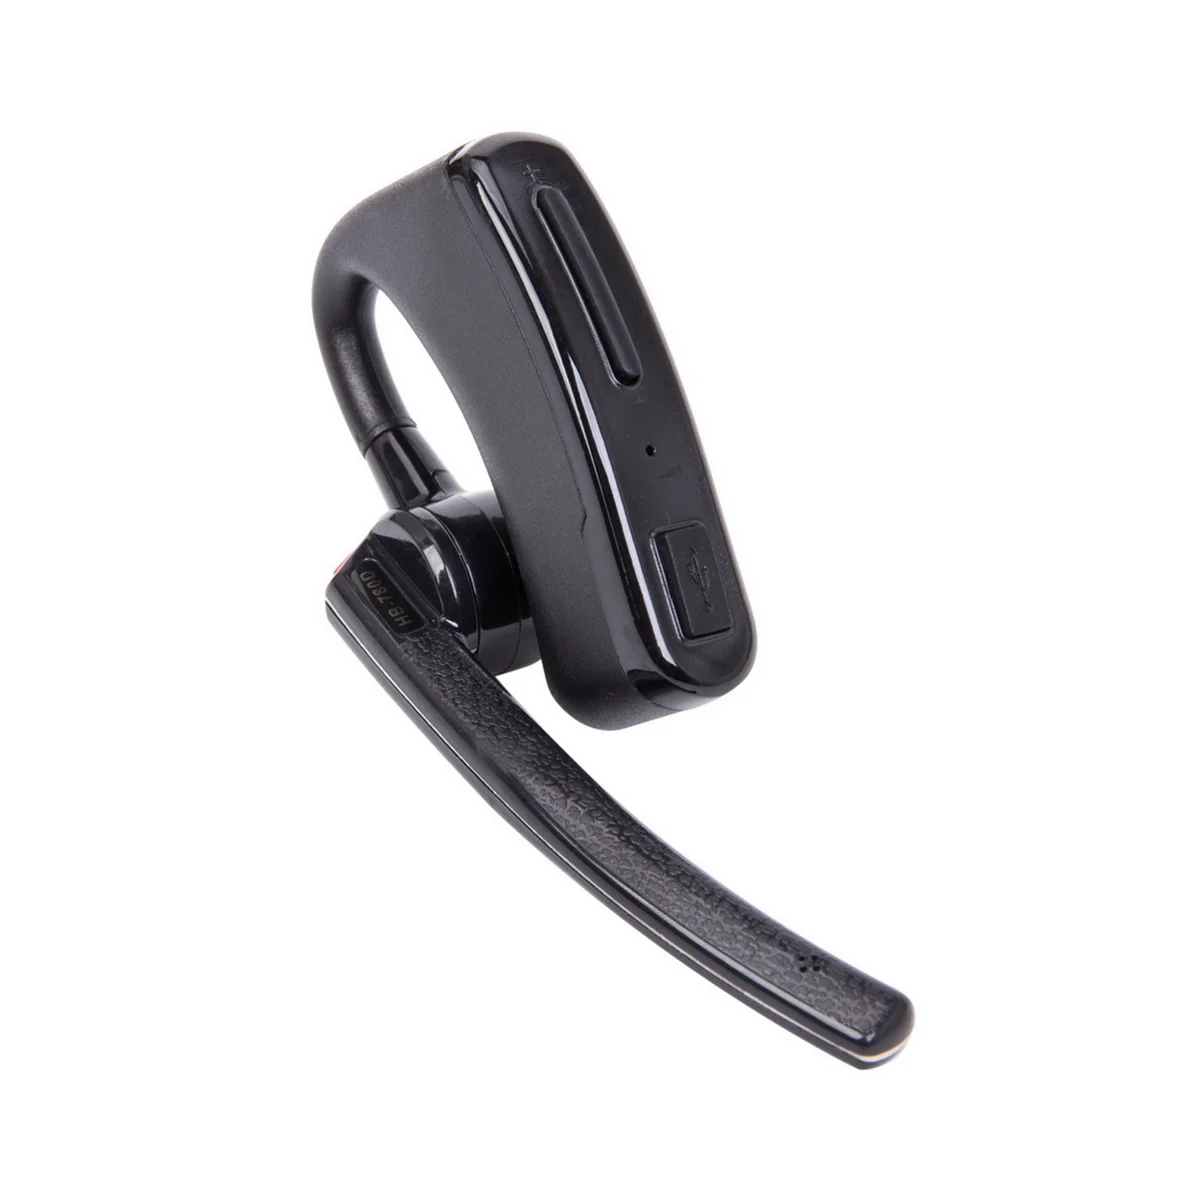 

Wireless Walkie Talkie Bluetooth PTT Headset Earpiece for Motorola EP450 GP88 PRO2150 P110 Mic Headset Adapter